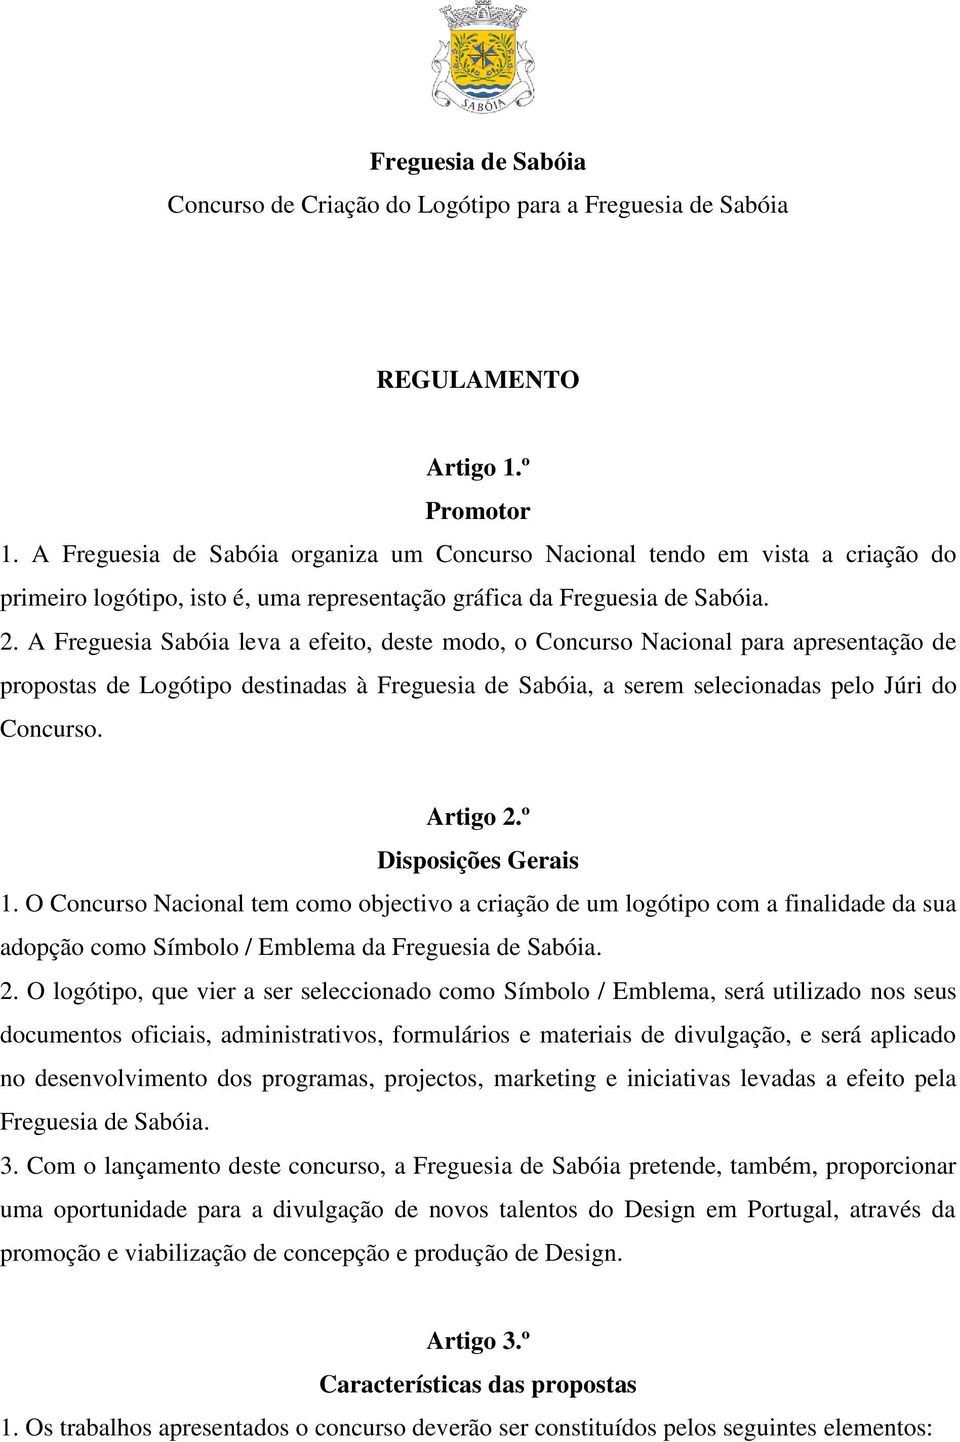 A Freguesia Sabóia leva a efeito, deste modo, o Concurso Nacional para apresentação de propostas de Logótipo destinadas à Freguesia de Sabóia, a serem selecionadas pelo Júri do Concurso. Artigo 2.